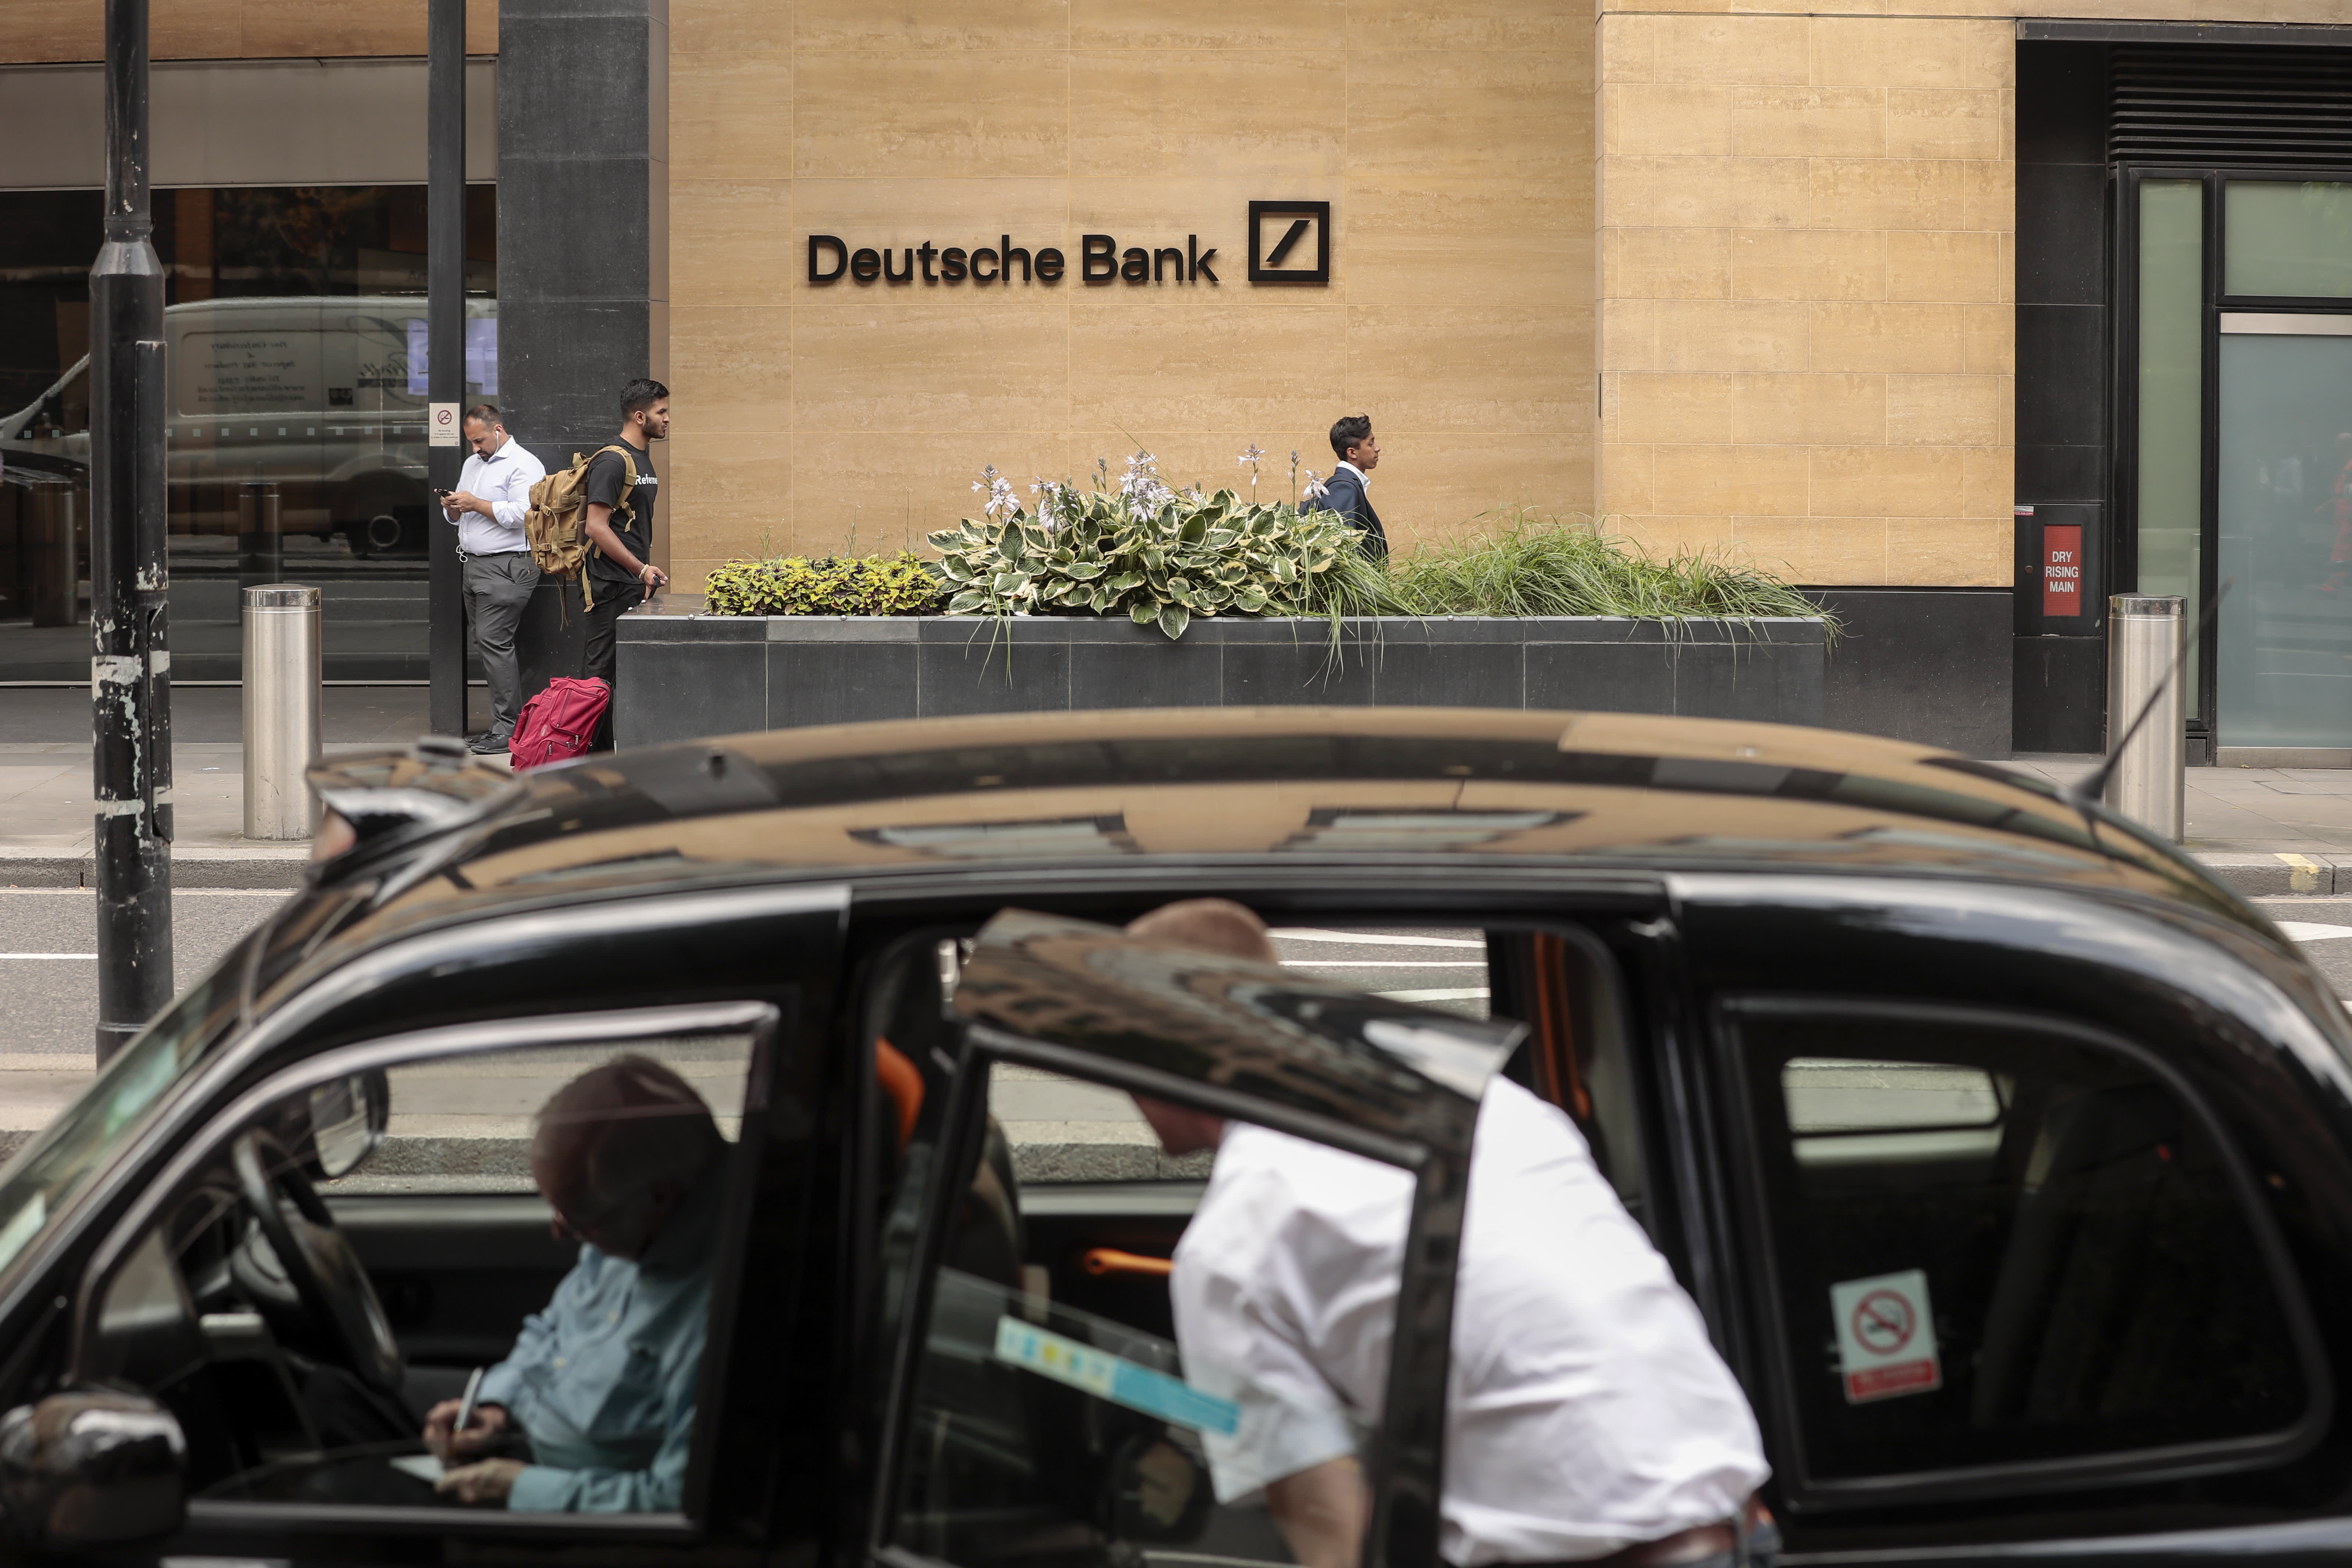 जेपी मॉर्गन ने ड्यूश बैंक स्टॉक का बचाव किया, कहते हैं कि बाजार गलत हो रहा है